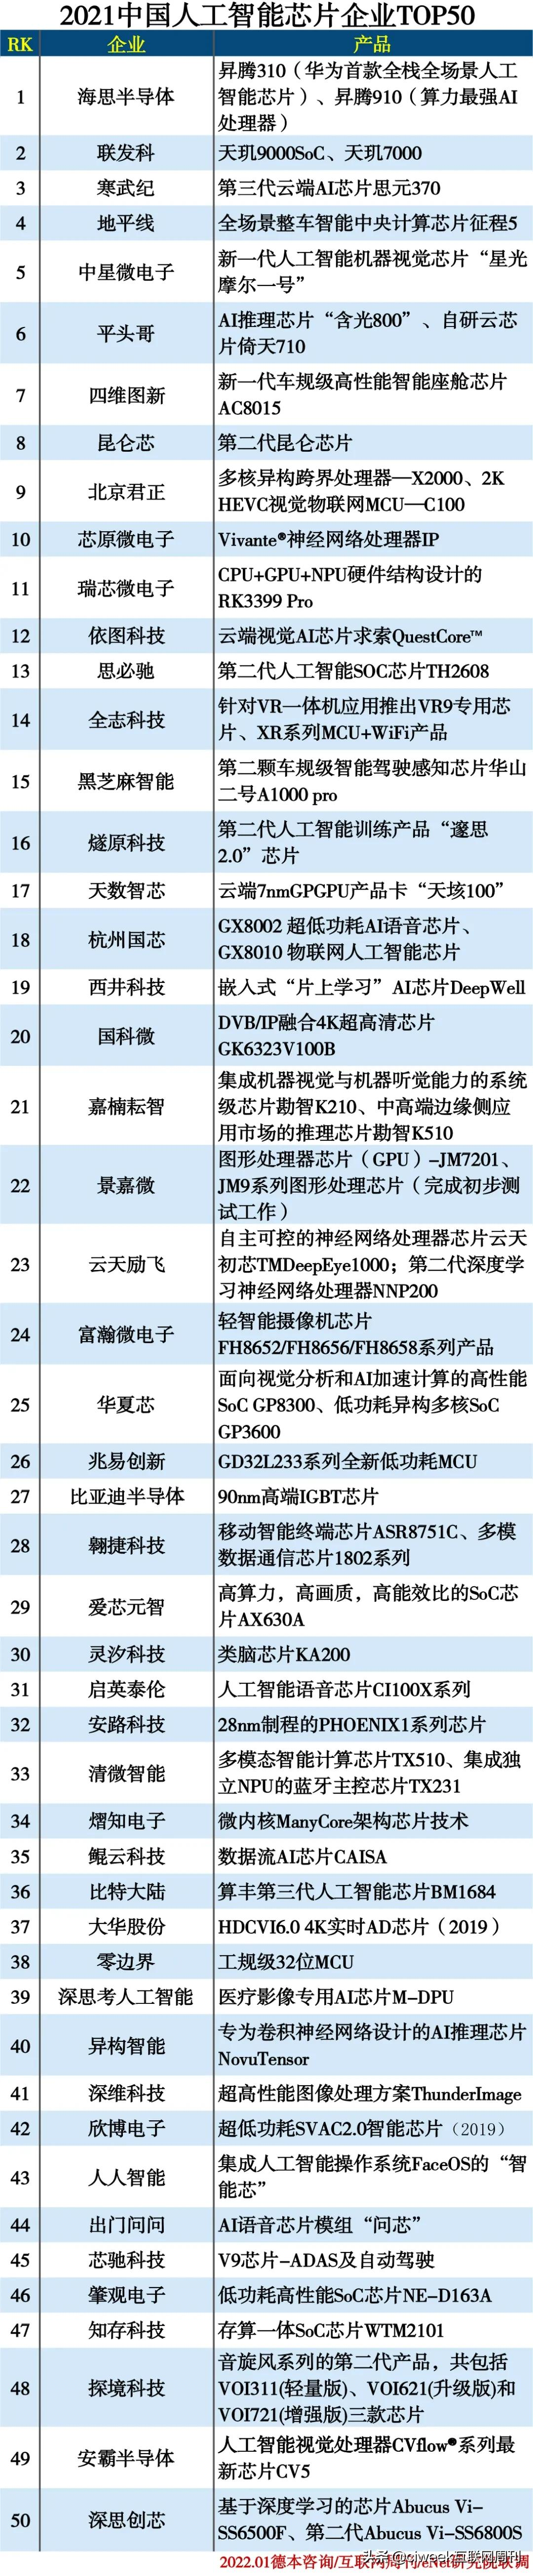 2021中国人工智能芯片企业TOP50